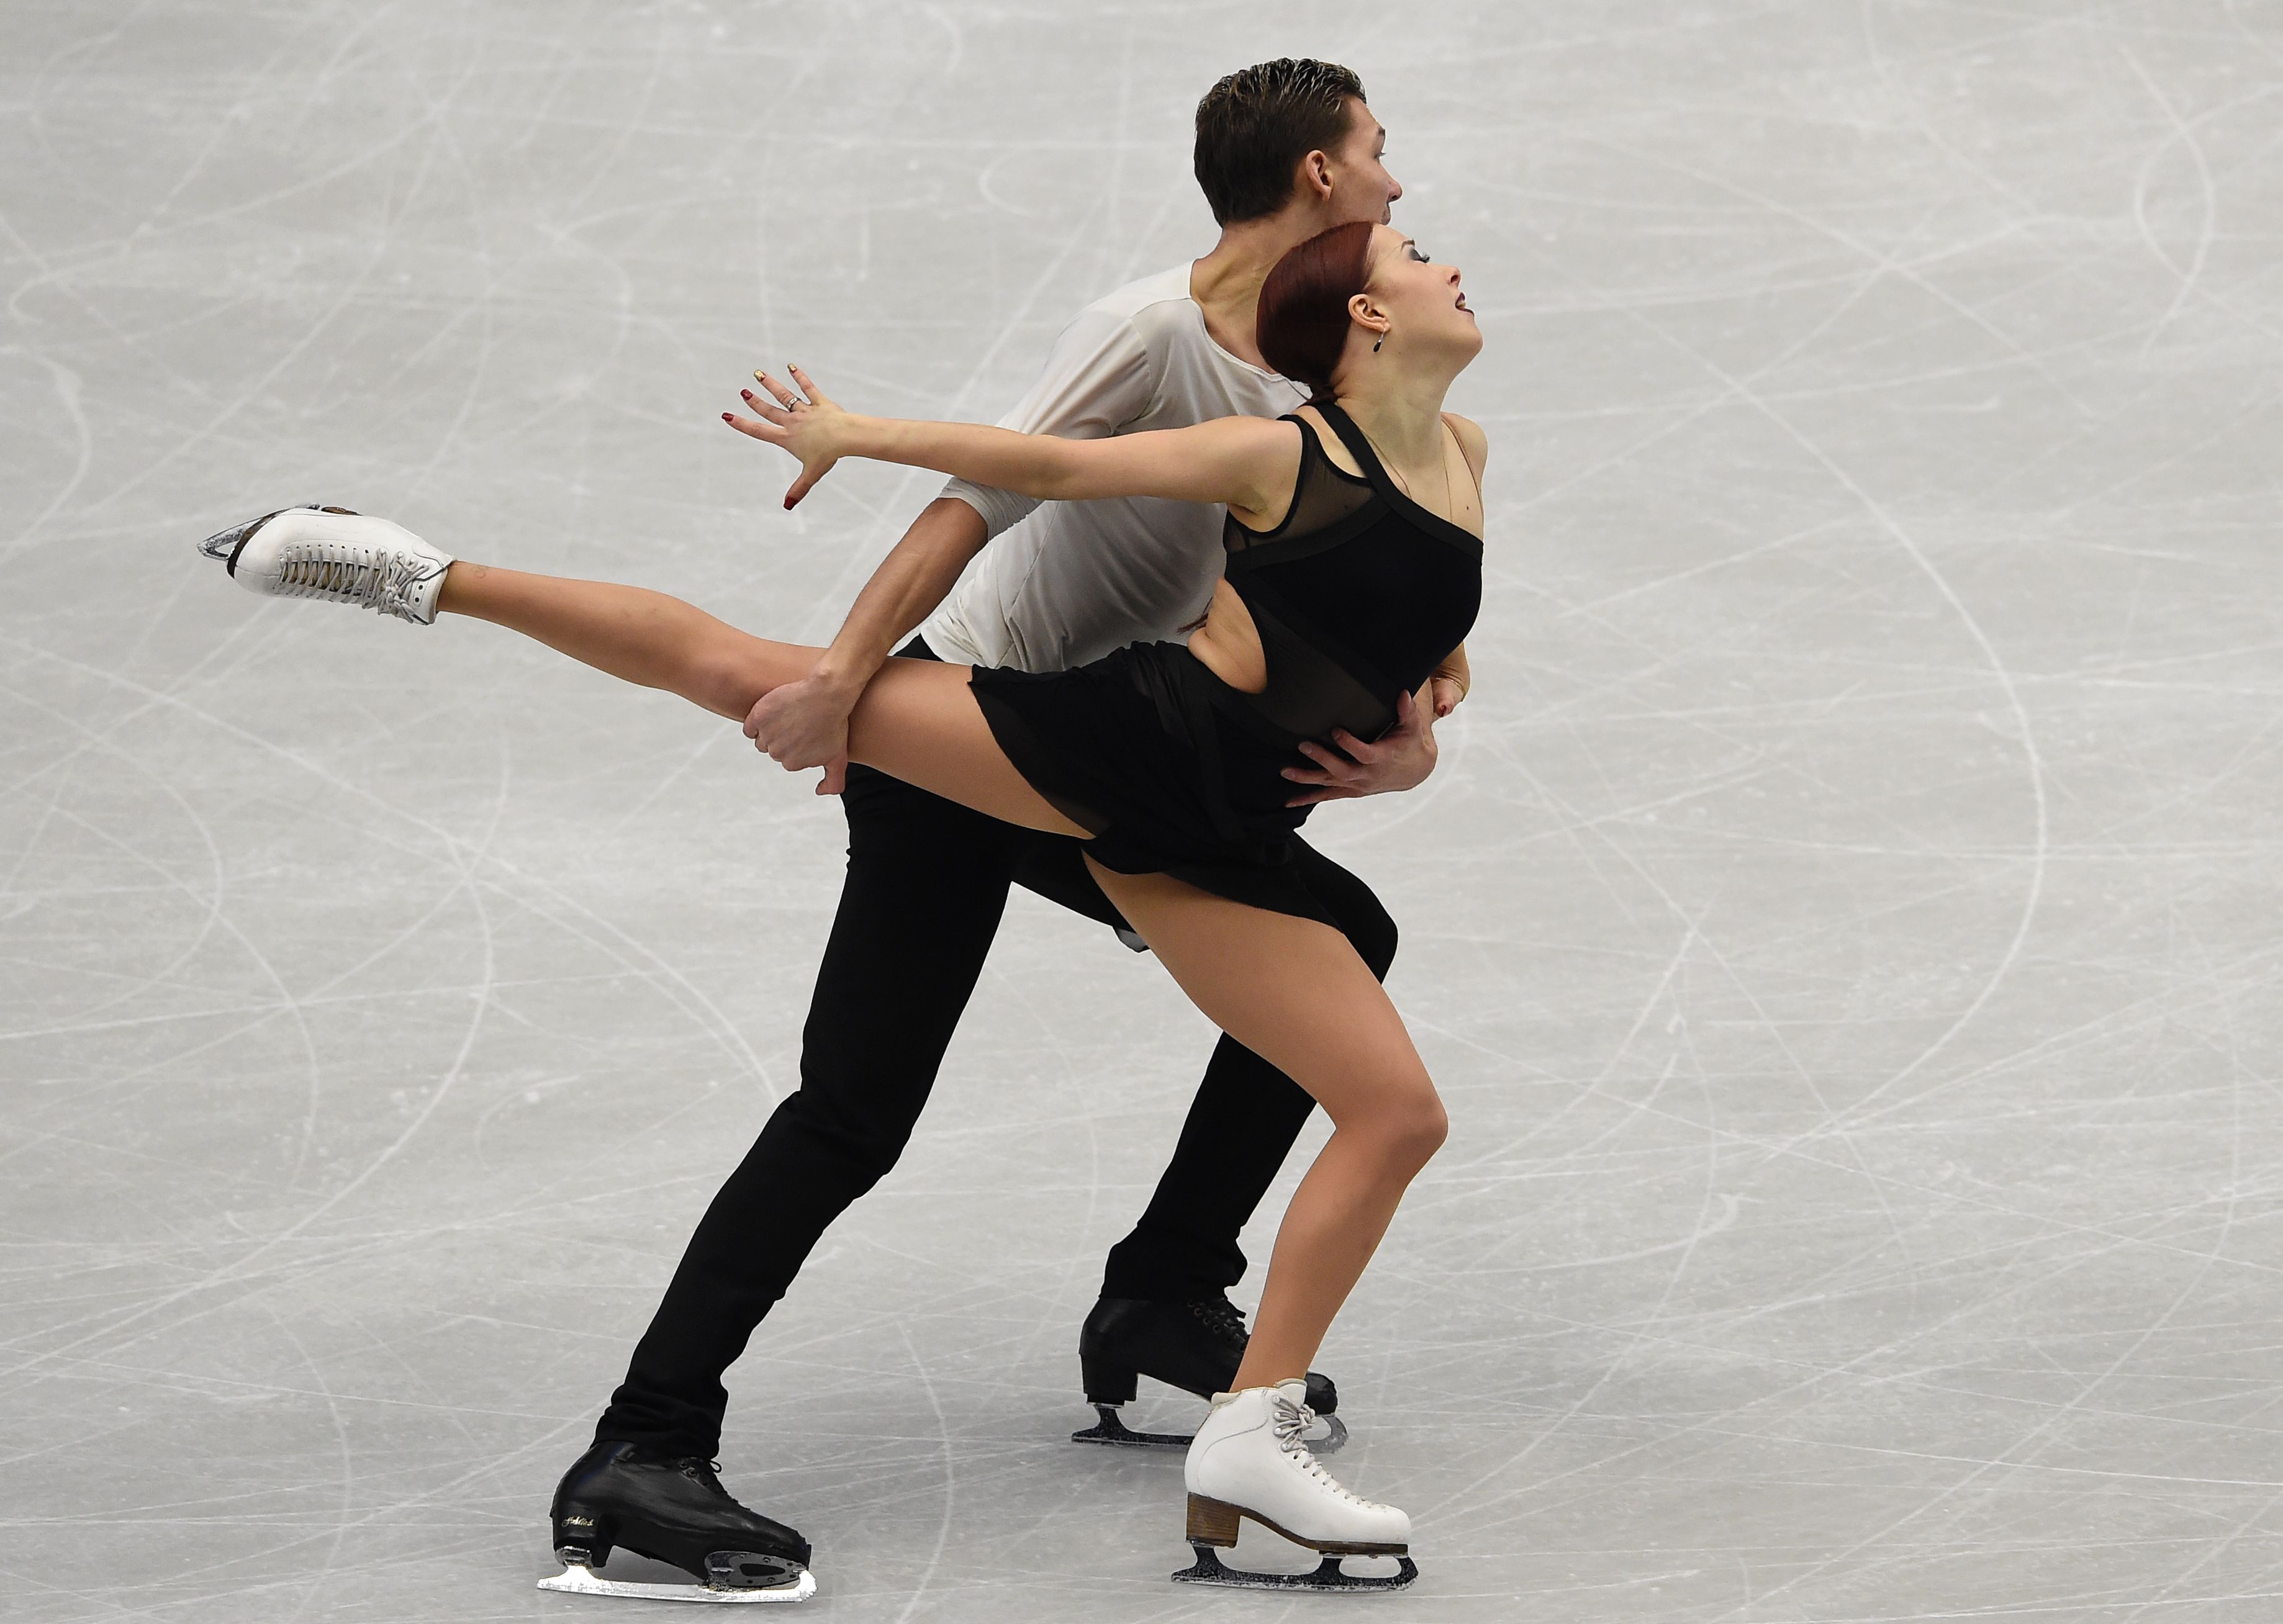 بطولة كأس الأمم الأوروبية 2017 للرقص الحر على الجليد (25)